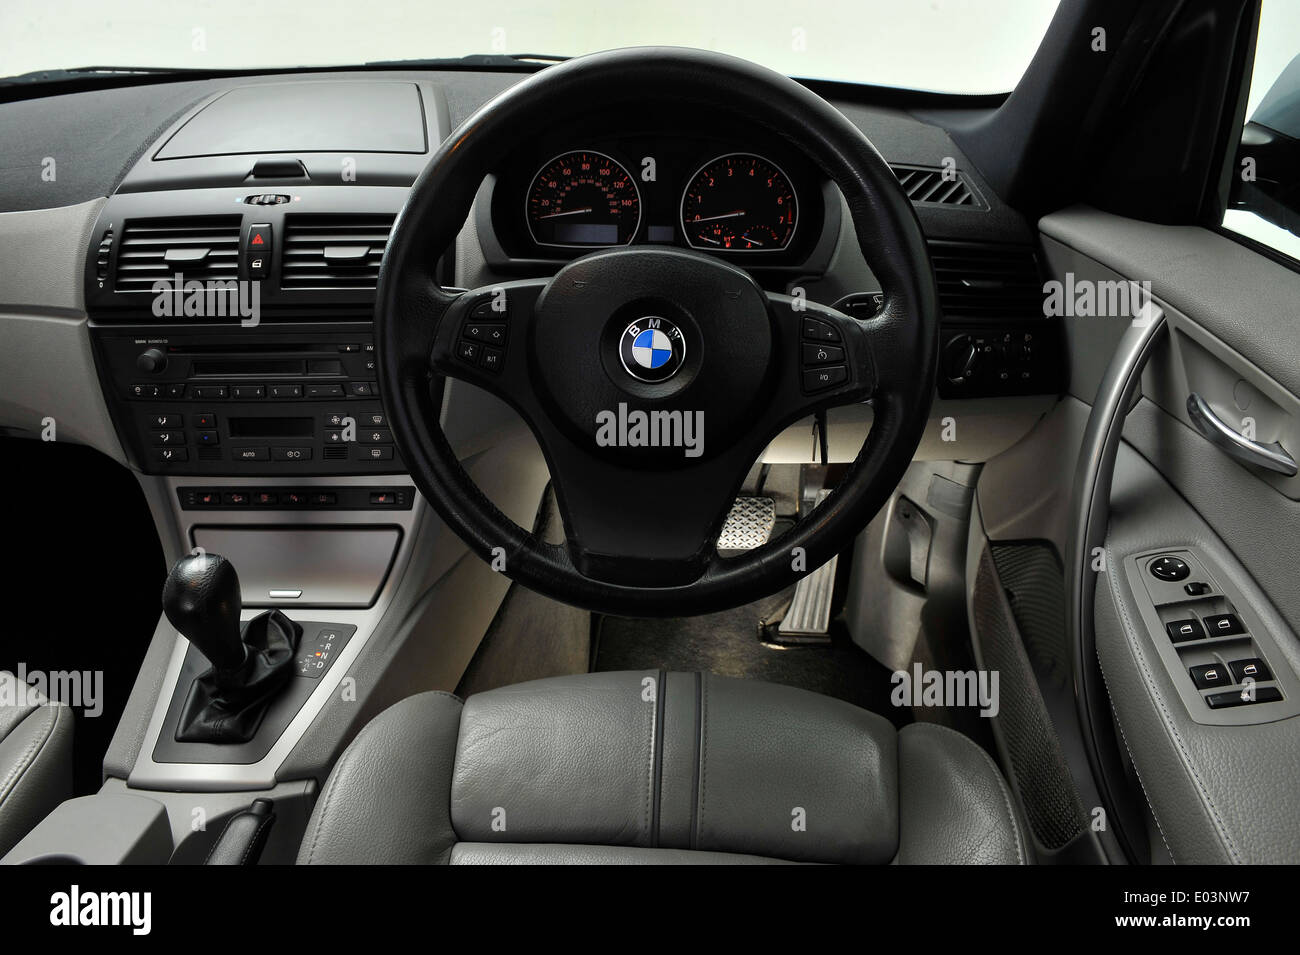 2005 BMW X3 Stock Photo